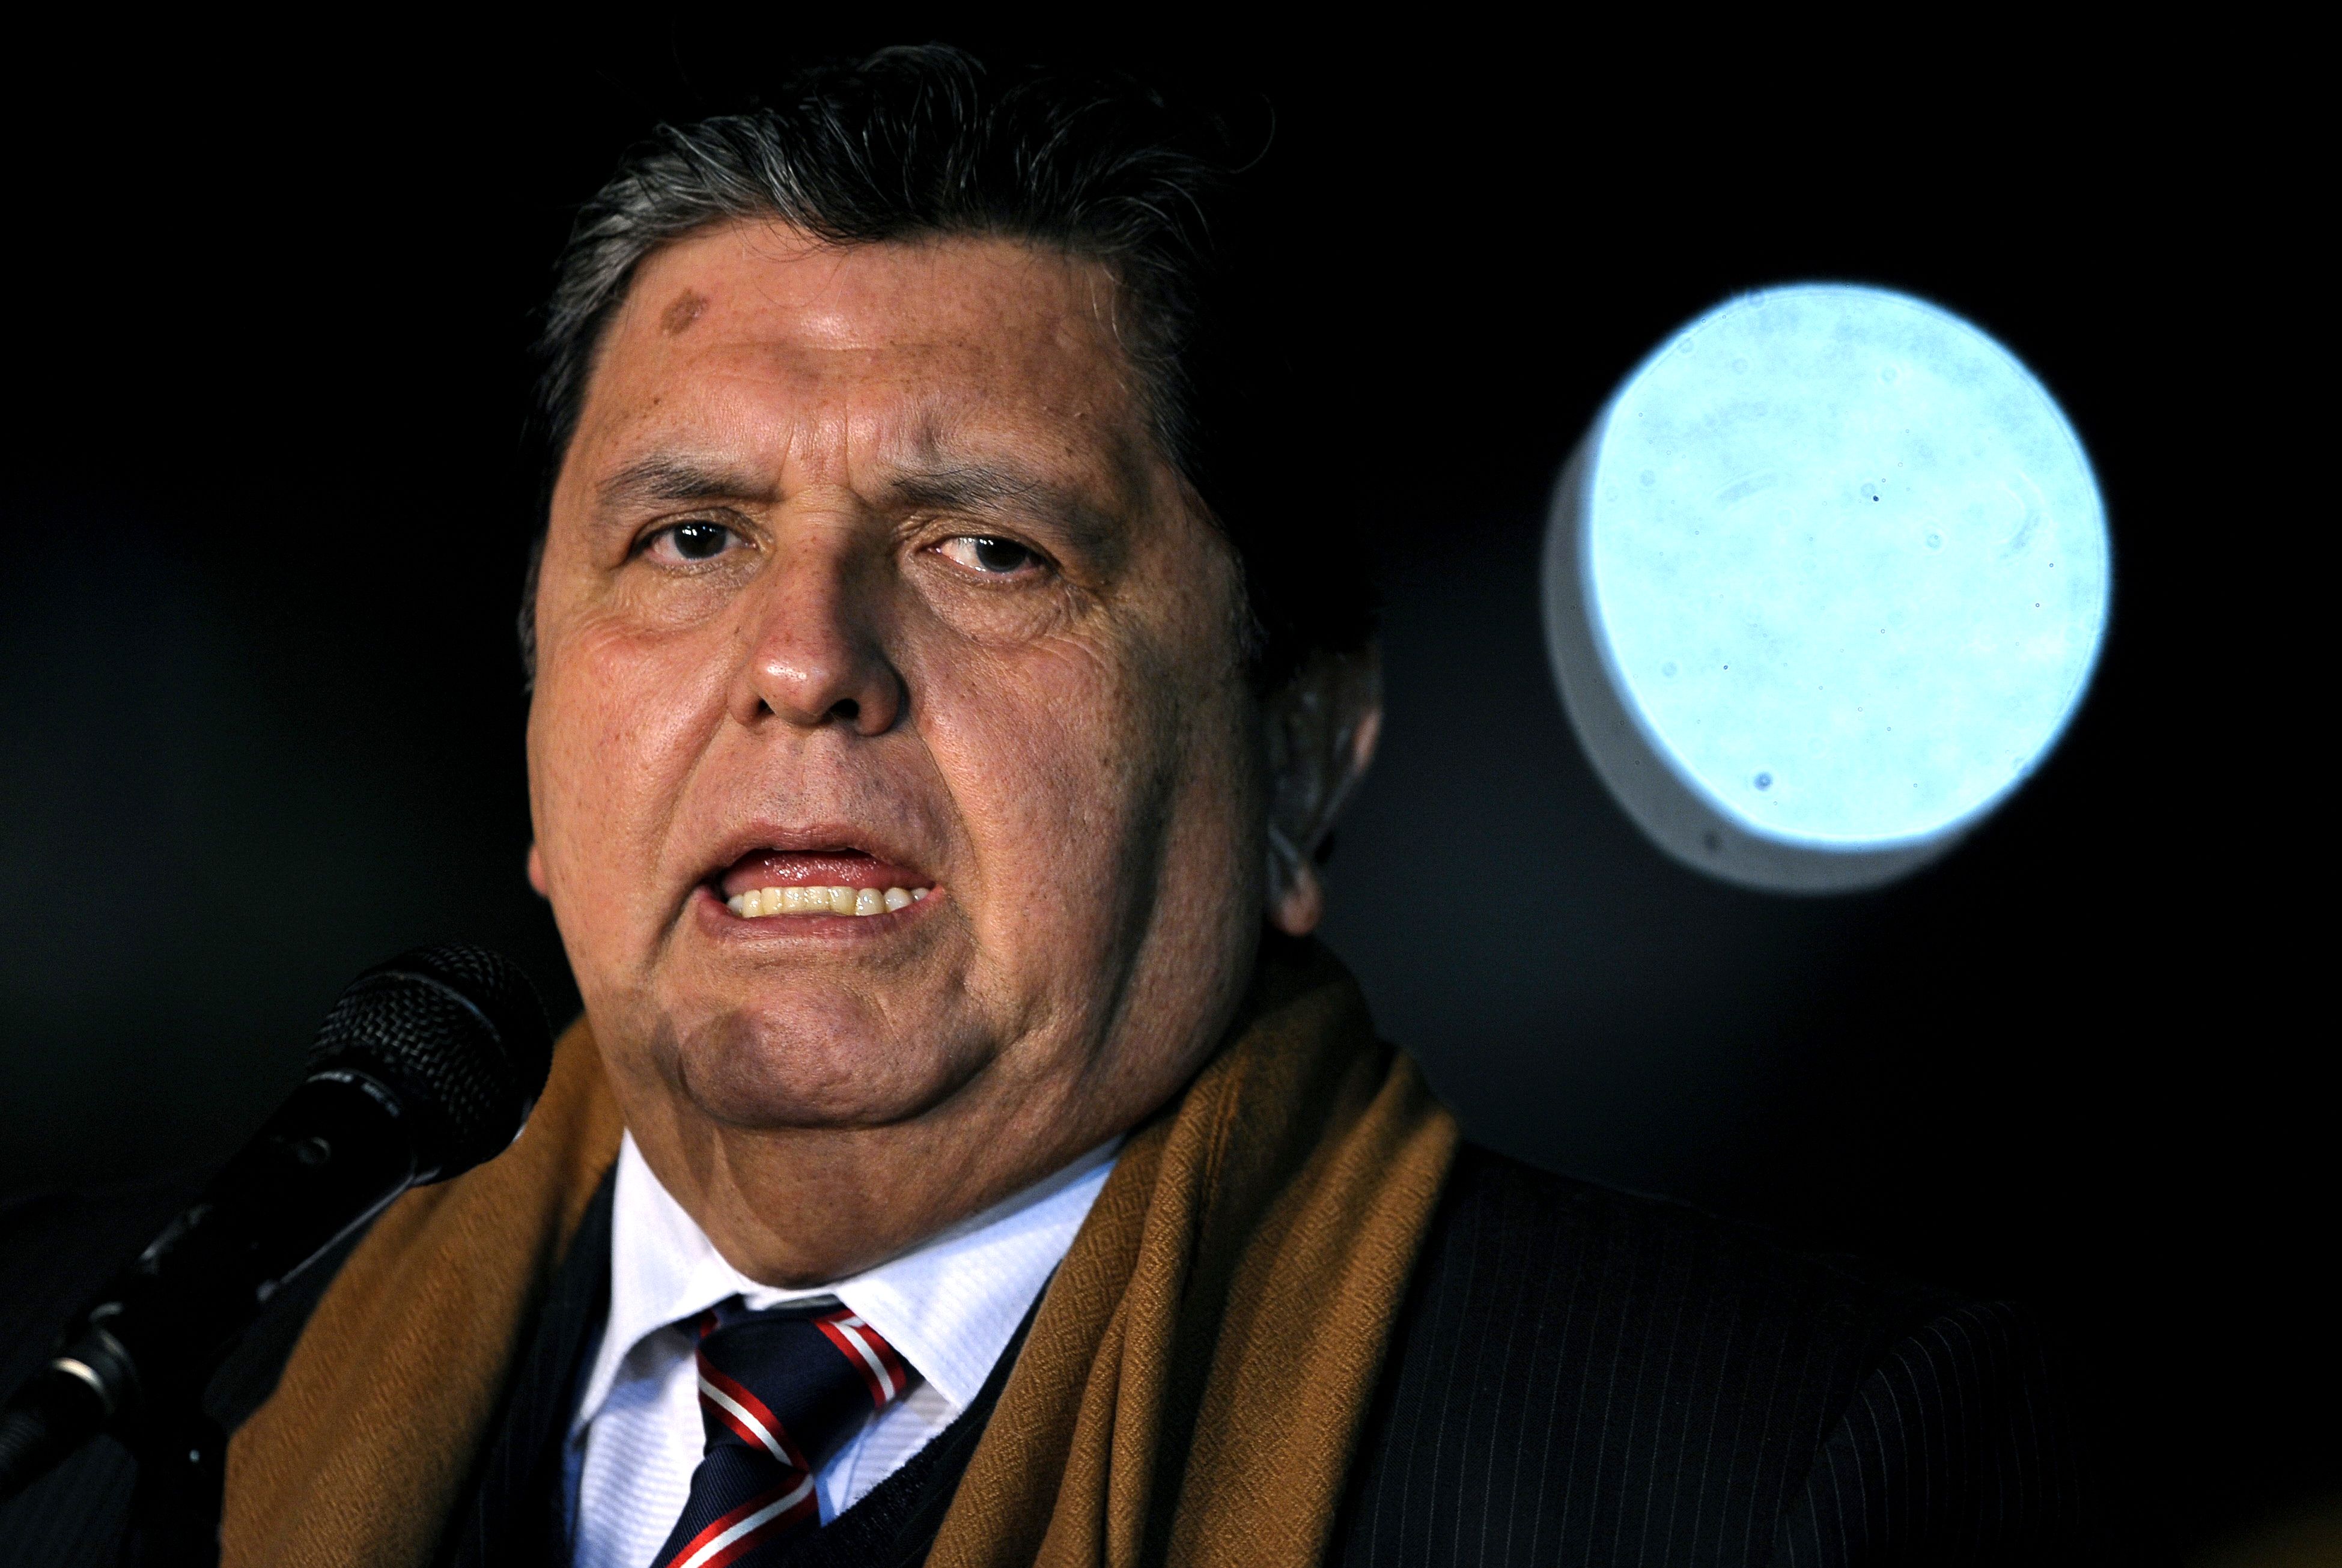 El expresidente Alan García es señalado de formar parte de la trama de corrupción de la brasileña Odebretch. (Foto Prensa Libre: AFP)